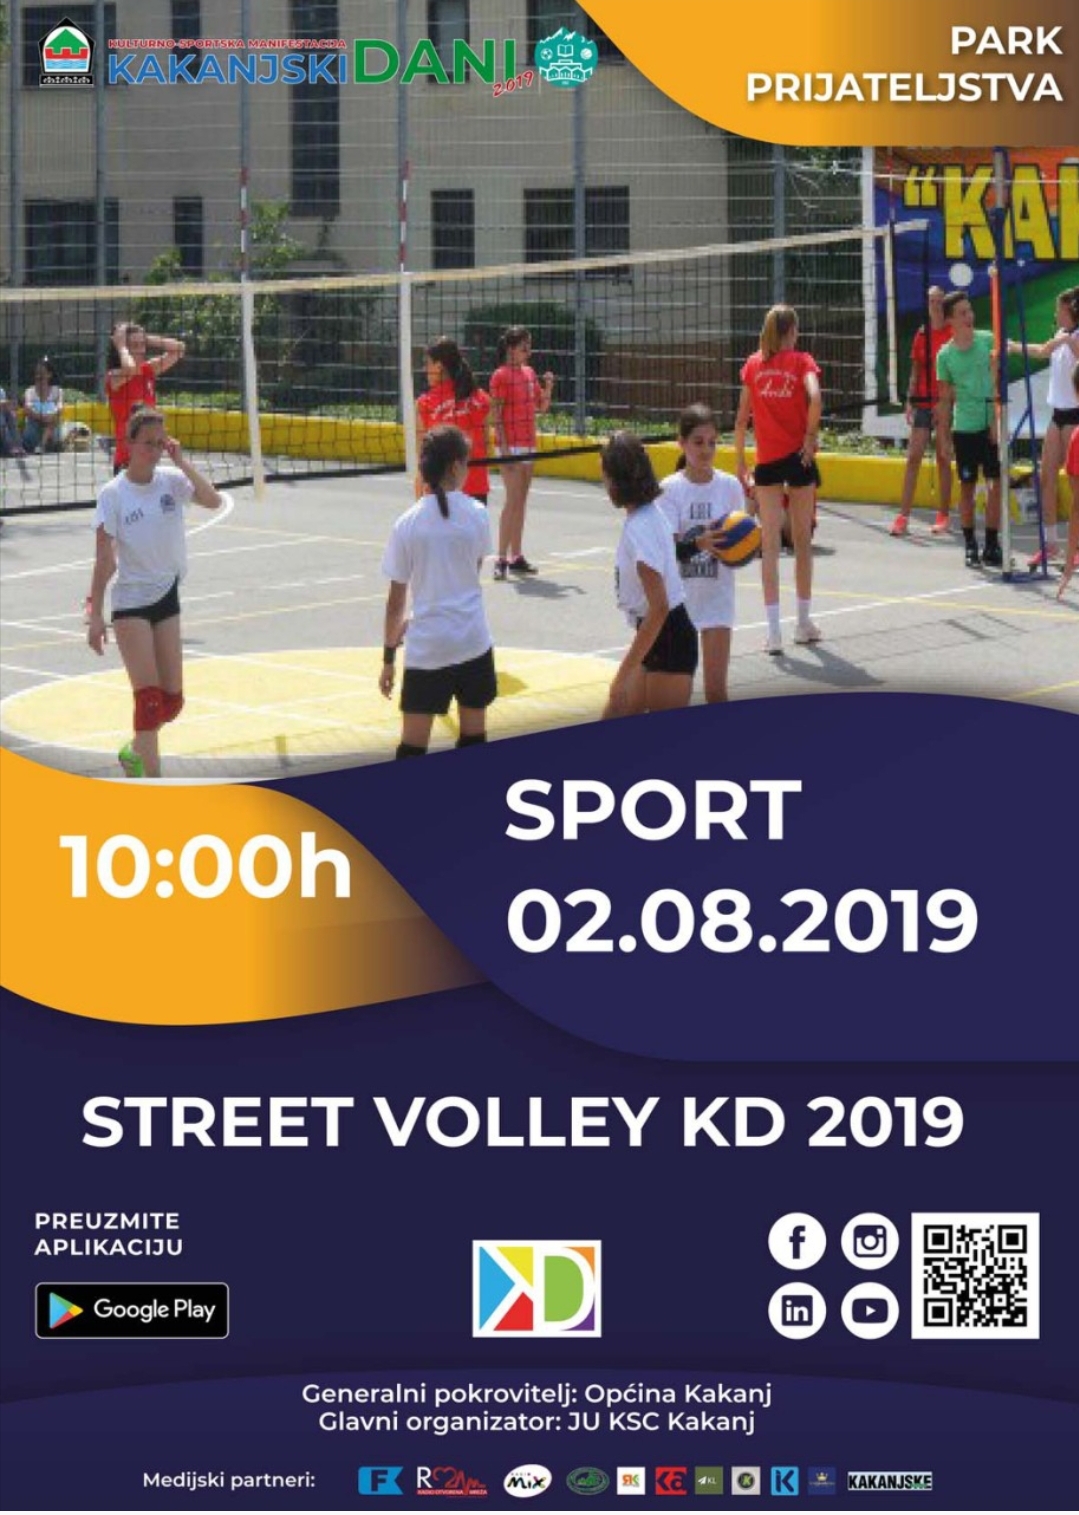 KD2019: Turnir u odbojci “Street volley 2019”